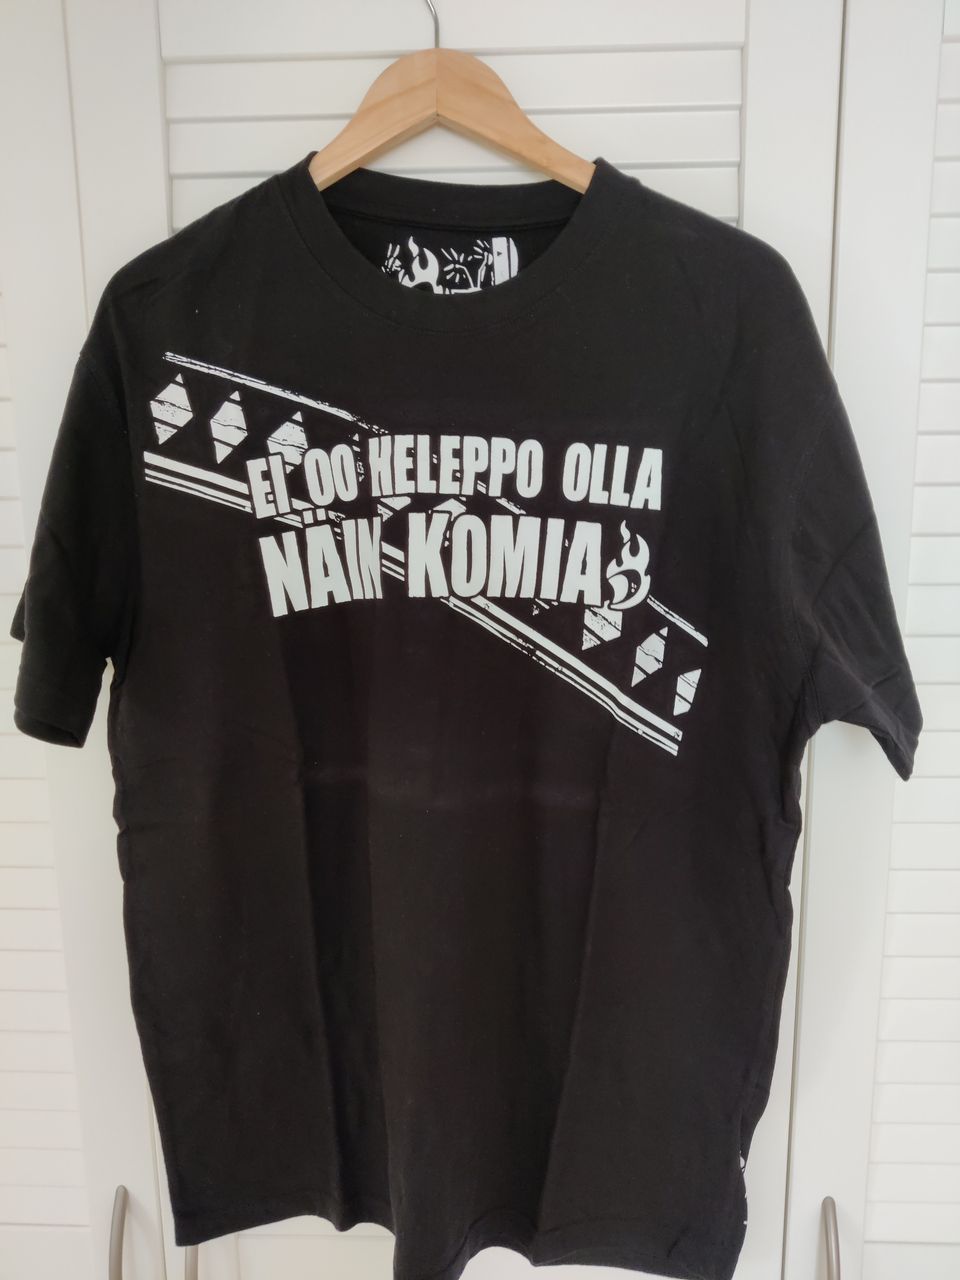 Miesten "Ei oo heleppo olla näin komia" T-paita, koko XXL